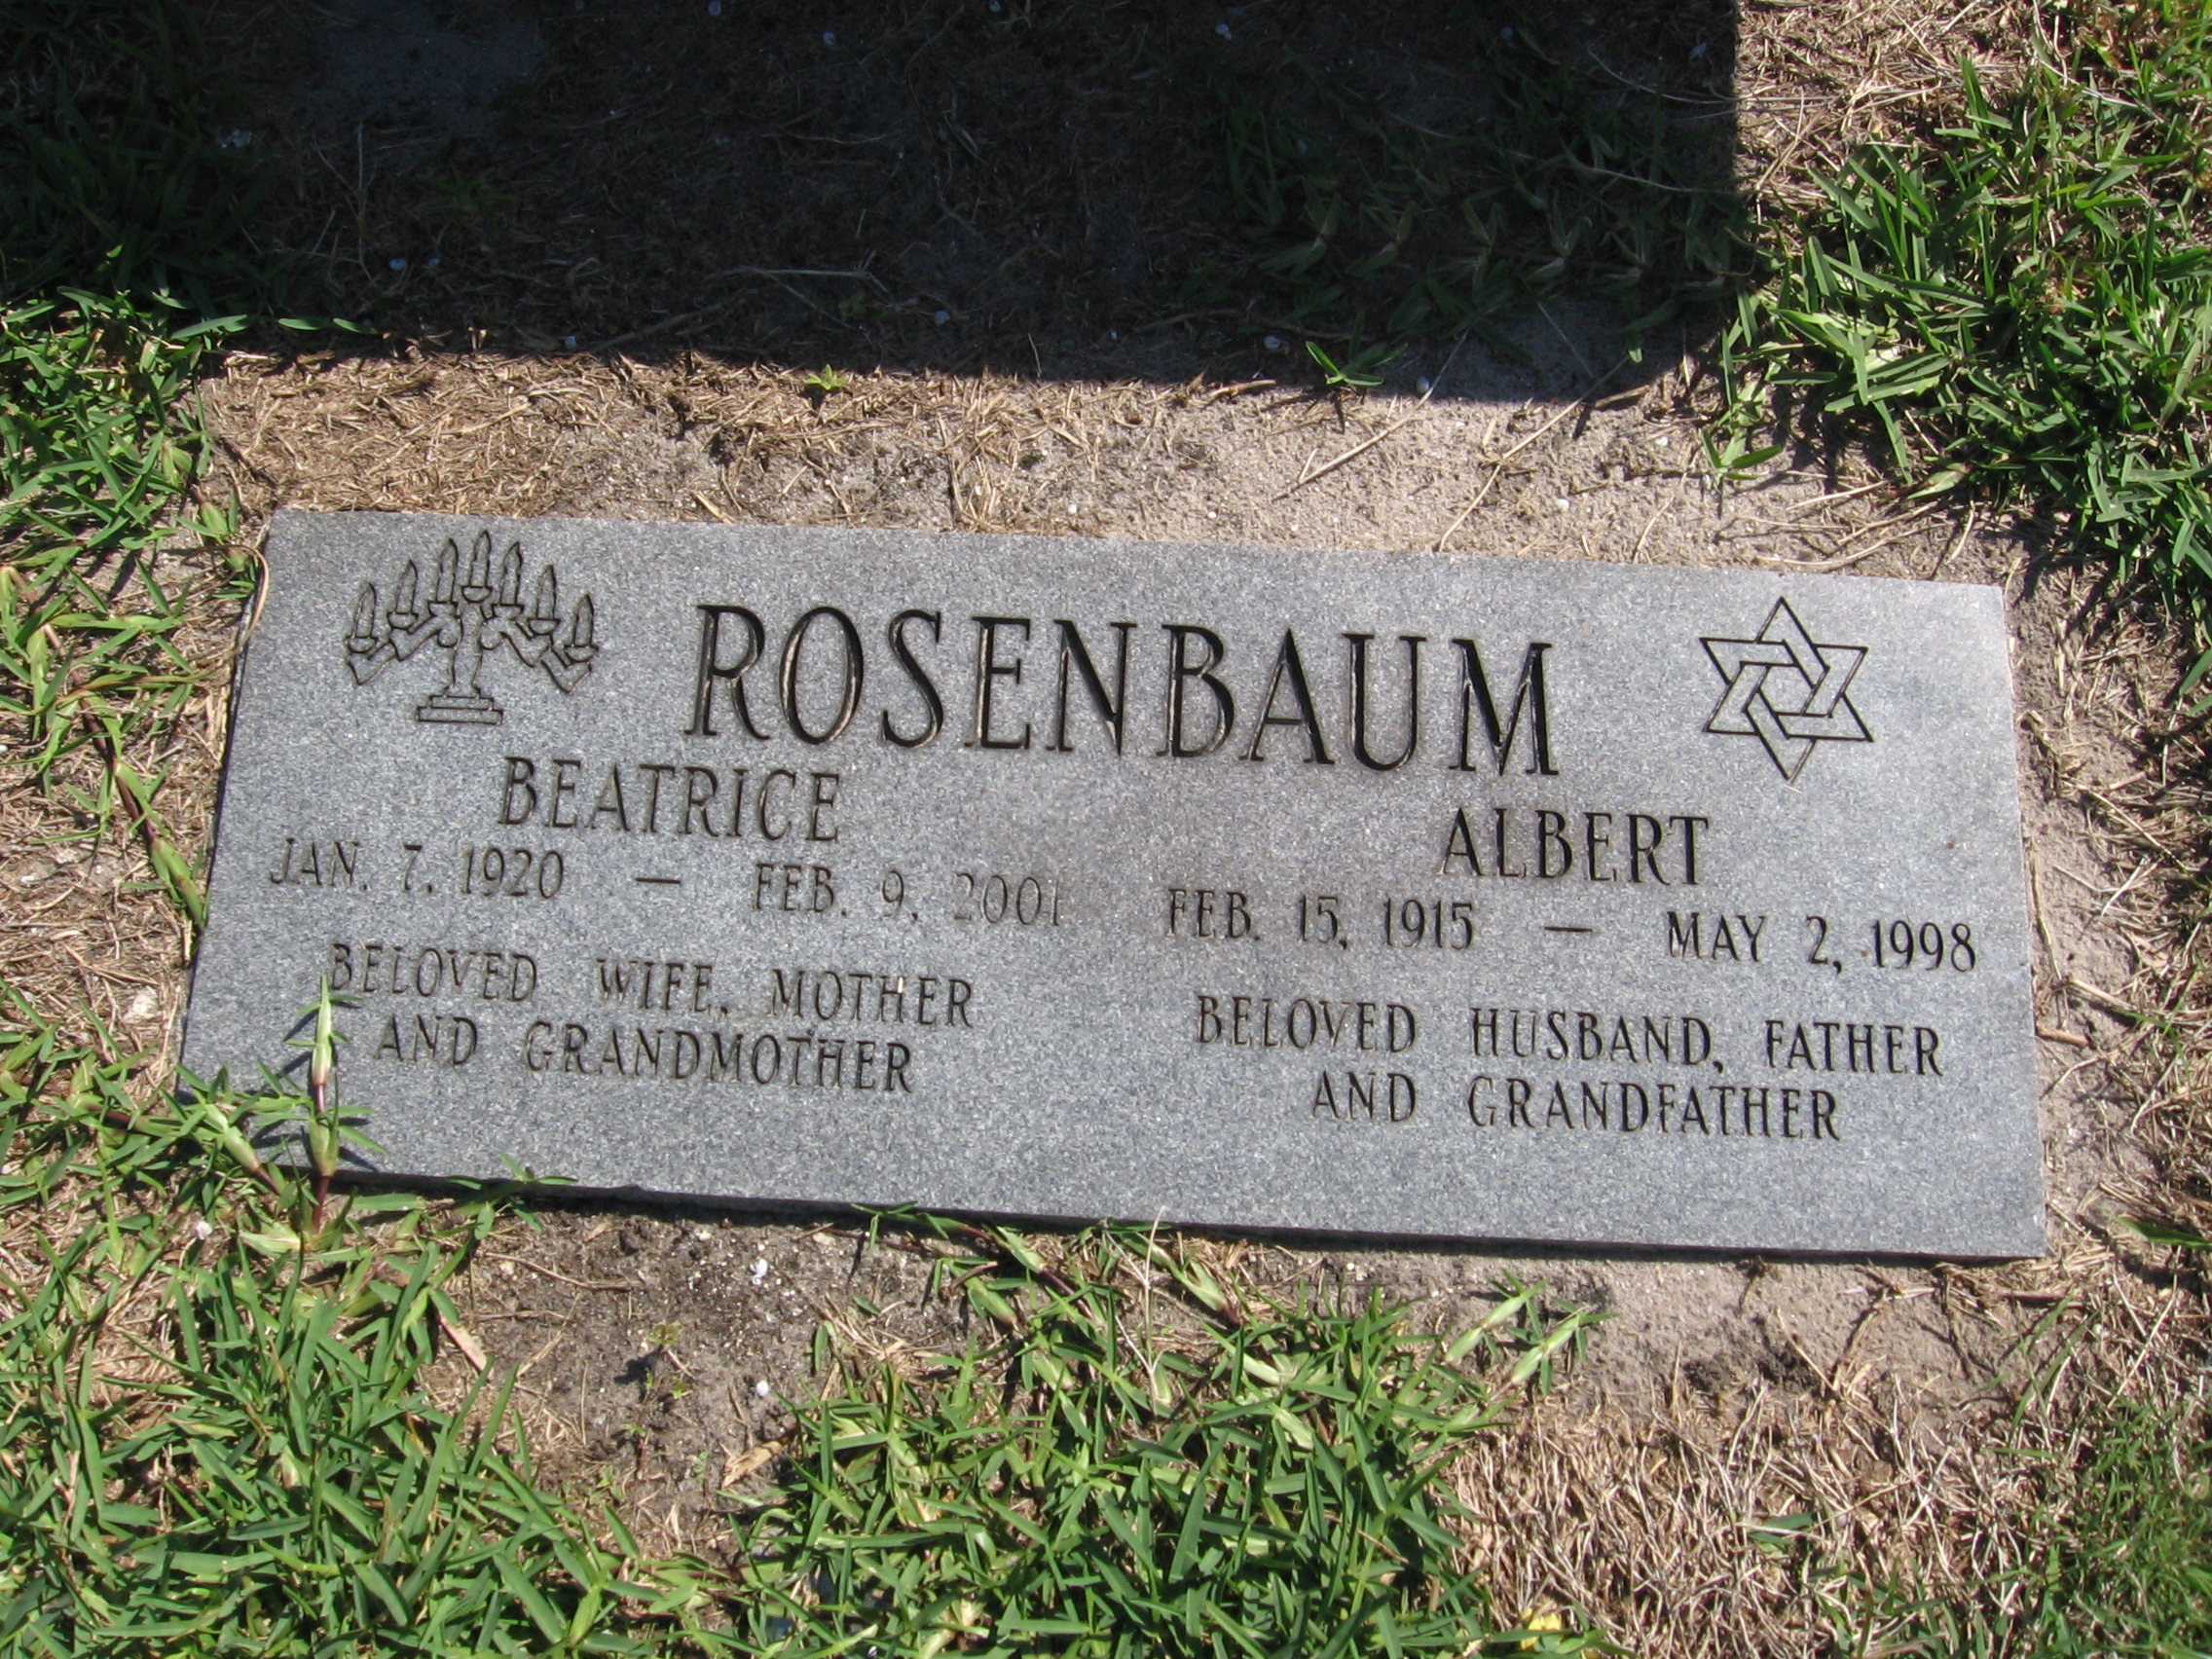 Beatrice Rosenbaum